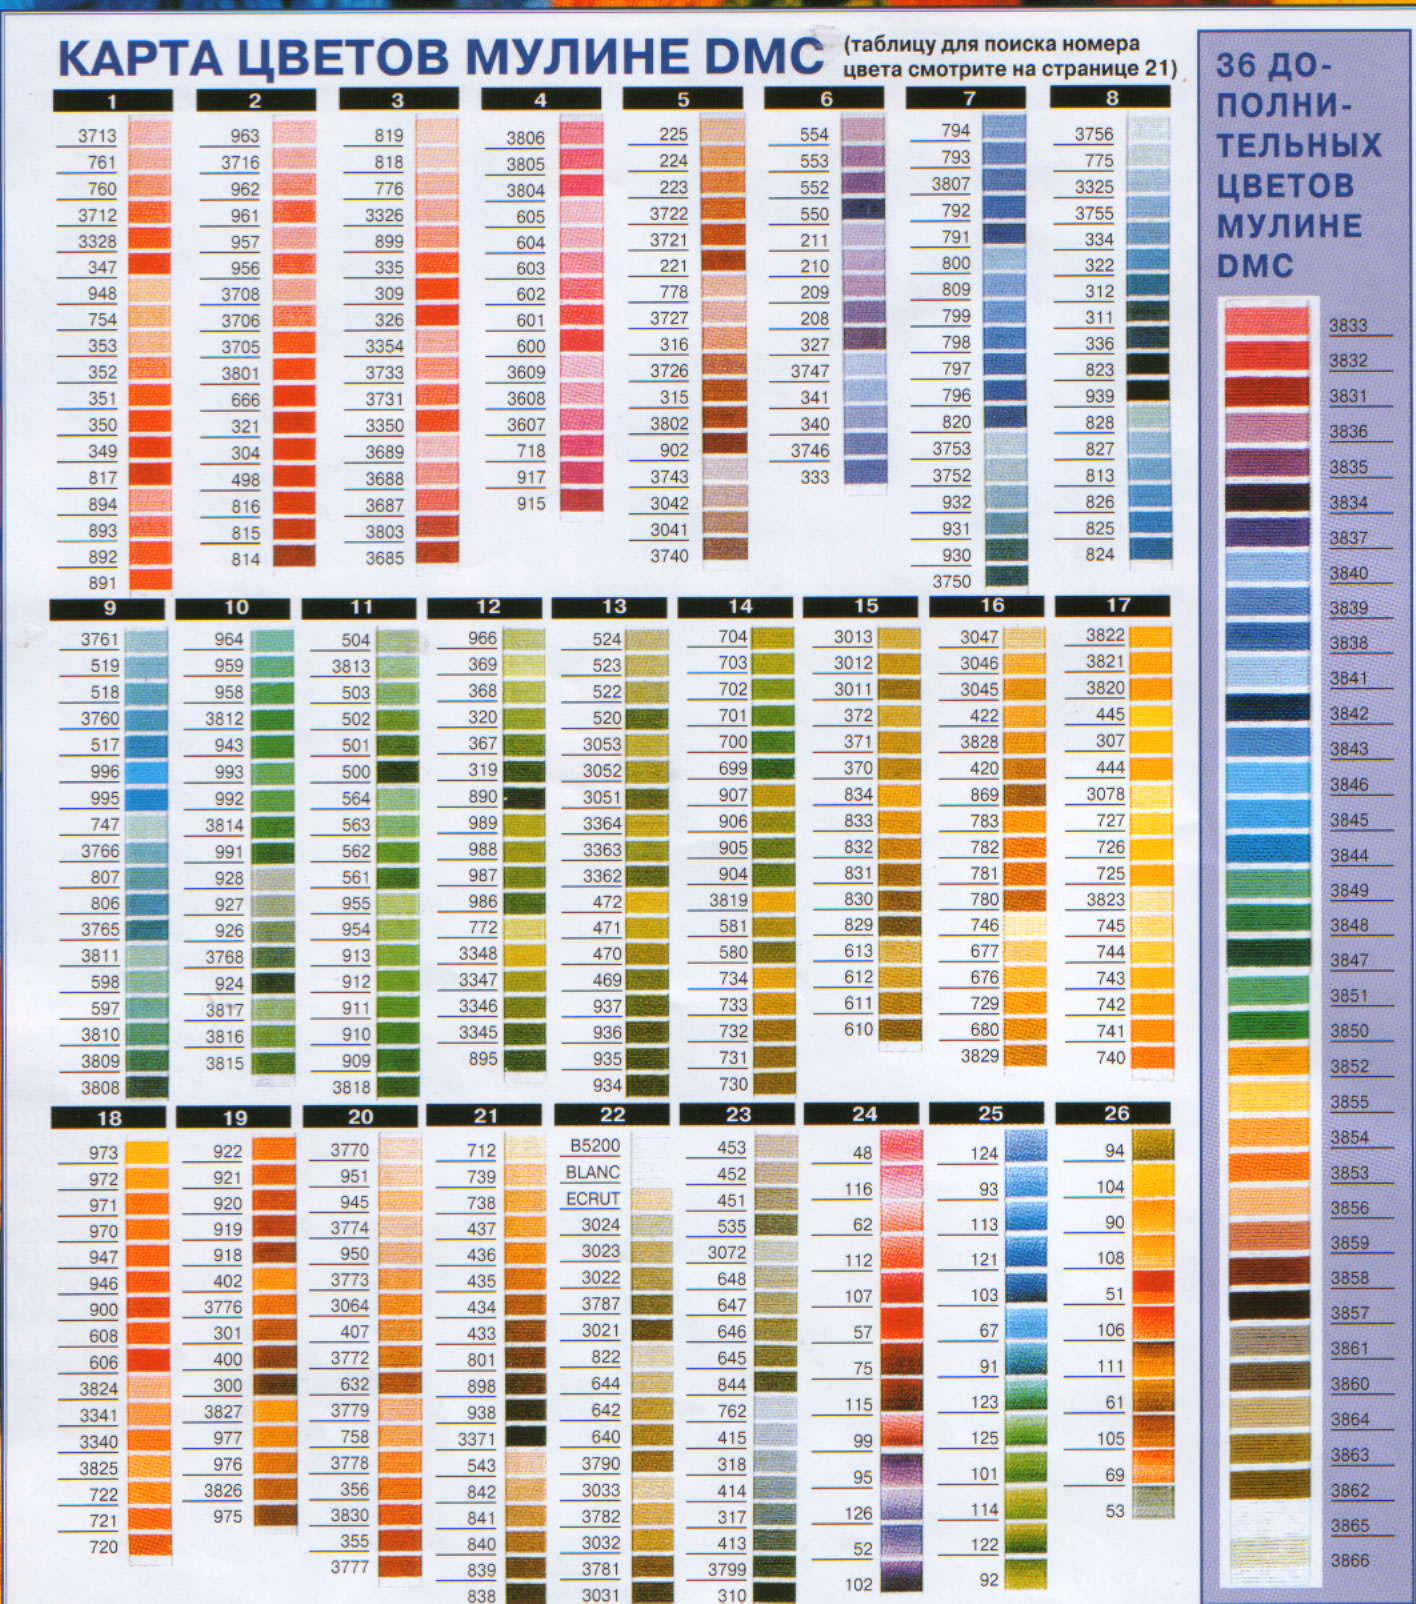 Названия ниток гамма. Таблица цветов ниток мулине СХС. Цветовая палитра мулине ДМС. Нитки мулине DMC таблица цветов. Мулине Gamma 0011 (гамма).